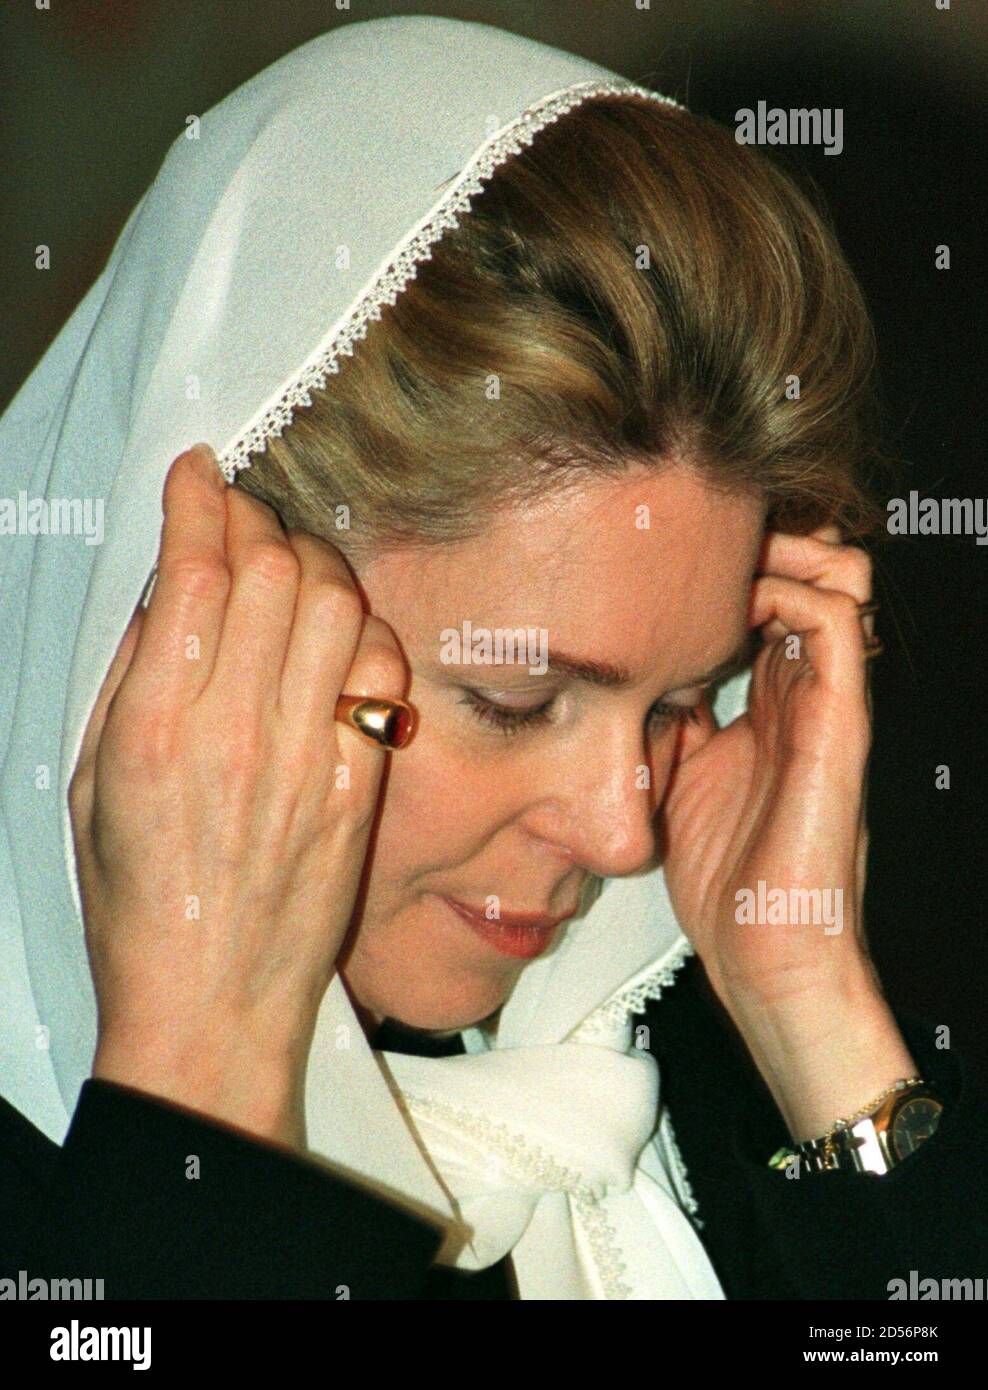 La Reina Noor, nacida en Estados Unidos, viuda del Rey Hussein de Jordania,  lleva un anillo que le presentó a su difunto marido después de su primera  fecha, mientras ajusta su pañuelo